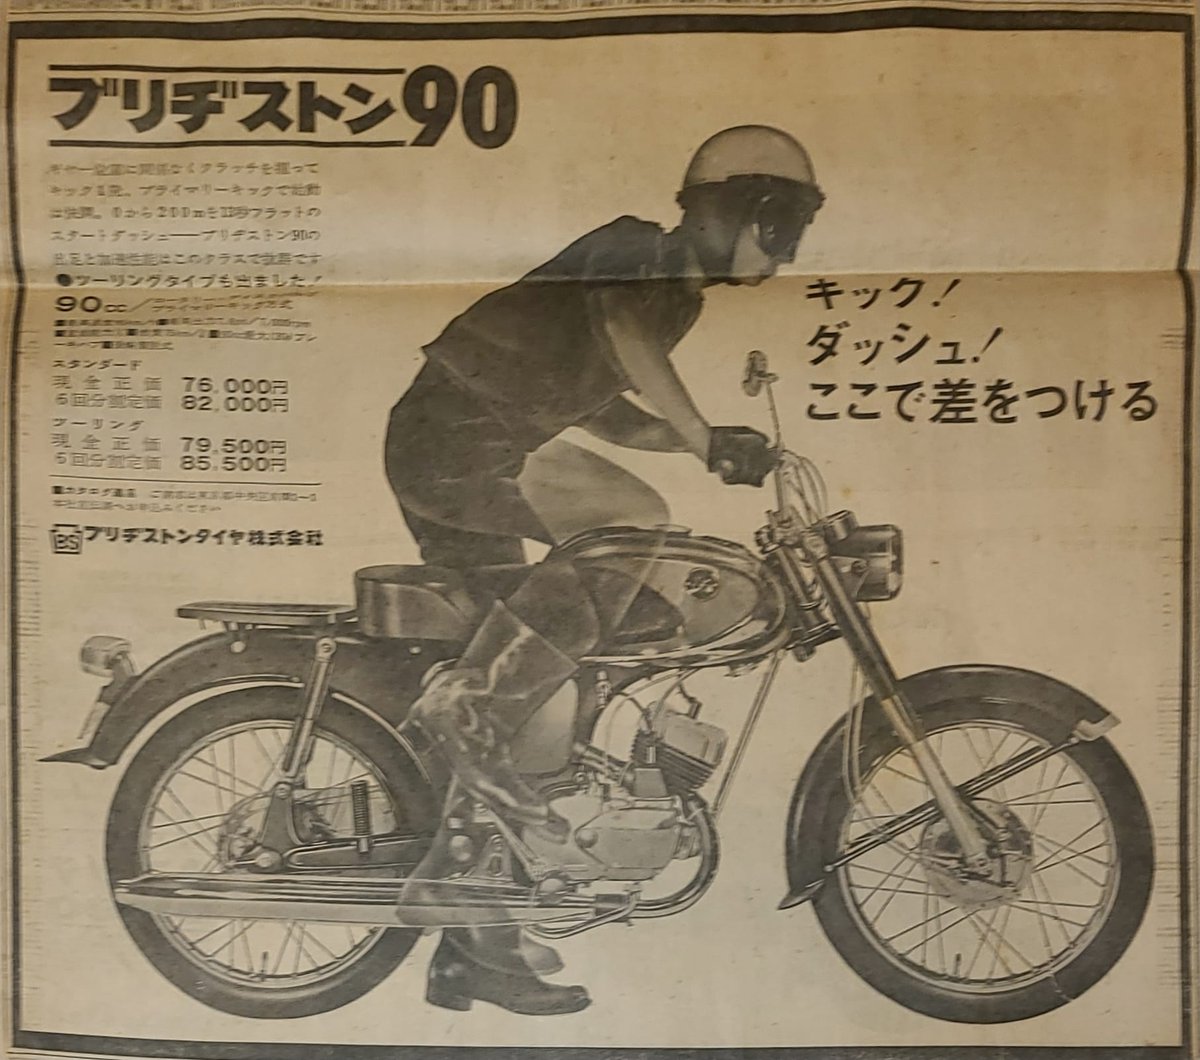 1964年の新聞広告です。
ブリヂストンのバイクあったのですね。
ブリヂストン90コストを度外視し性能はとても良かったのですね。

ブリヂストンサイクル工業この広告で初めて知りました。
BY Yuji Ono